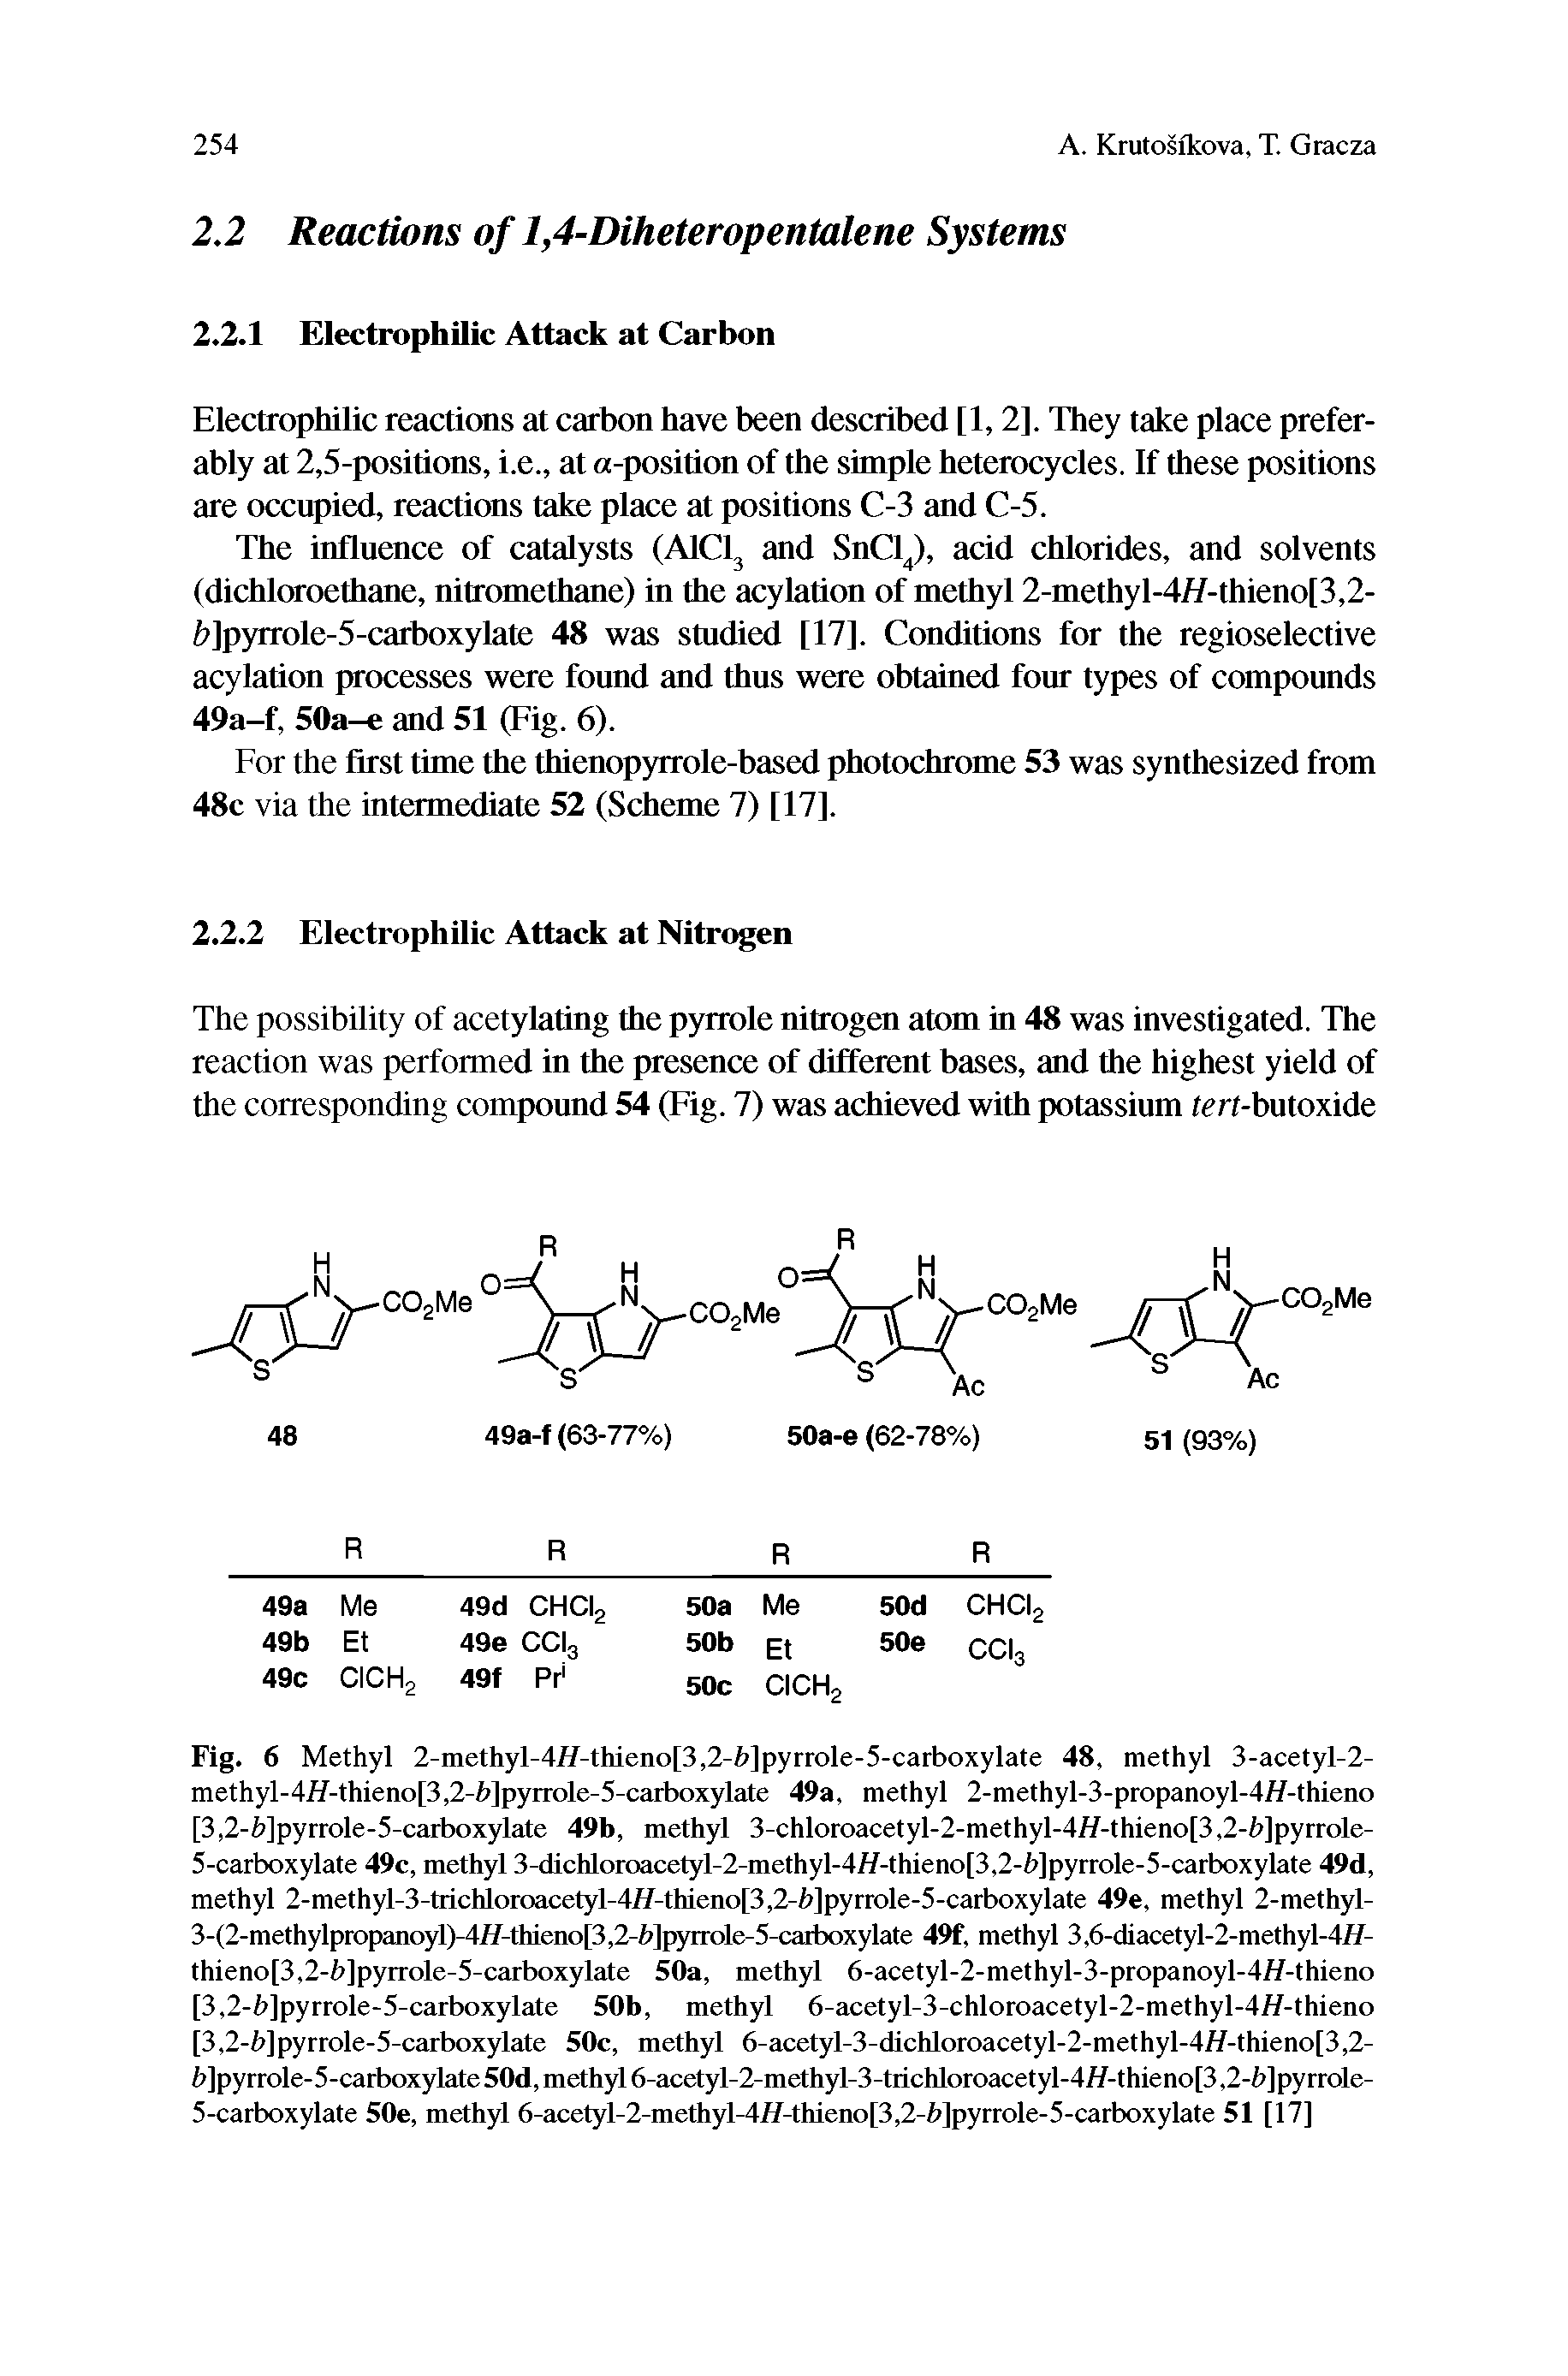 Fig. 6 Methyl 2-me.thyl-4//-thicno 3,2-hlpyrrole-5-carboxylate 48, methyl 3-acetyl-2-methyl-4//-thieno 3,2-b pyrrole-5-carboxylate 49a, methyl 2-methyl-3-propanoyl-4//-thieno [3,2-h]pyrrole-5-carboxylate 49b, methyl 3-chloroacetyl-2-methyl-4//-thieno[3,2-h]pyrrole-5-carboxylate 49c, methyl 3-dichloroacetyl-2-methyl-4//-thieno[3,2-h]pyrrole-5-carboxylate 49d, methyl 2-methyl-3-trichlomacctyl-4//-thicno 3,2-h]pyrrole-5-carboxylate 49e, methyl 2-methyl-3-(2-methylpropanoyl)-4/7-thieno[3,2- ]pyrrole-5-carboxylate 49f, methyl 3,6-diacetyl-2-methyl-4//-thieno[3,2-h]pyrrole-5-carboxylate 50a, methyl 6-acetyl-2-methyl-3-propanoyl-4//-thieno [3,2-h]pyrrole-5-carboxylate 50b, methyl 6-acetyl-3-chloroacetyl-2-methyl-4//-thieno [3,2-h]pyrrole-5-carboxylate 50c, methyl 6-acetyl-3-dichloroacetyl-2-methyl-4//-thieno[3,2-h]pyrrole-5-carboxylate50d, methyl 6-acetyl-2-methyl-3-trichloroacetyl-4//-thieno[3,2-h]pyrrole-5-carboxylate 50e, methyl 6-acctyl-2-mcthyl-4//-thicno 3,2-h pyrrole-5-carboxylate 51 [17]...